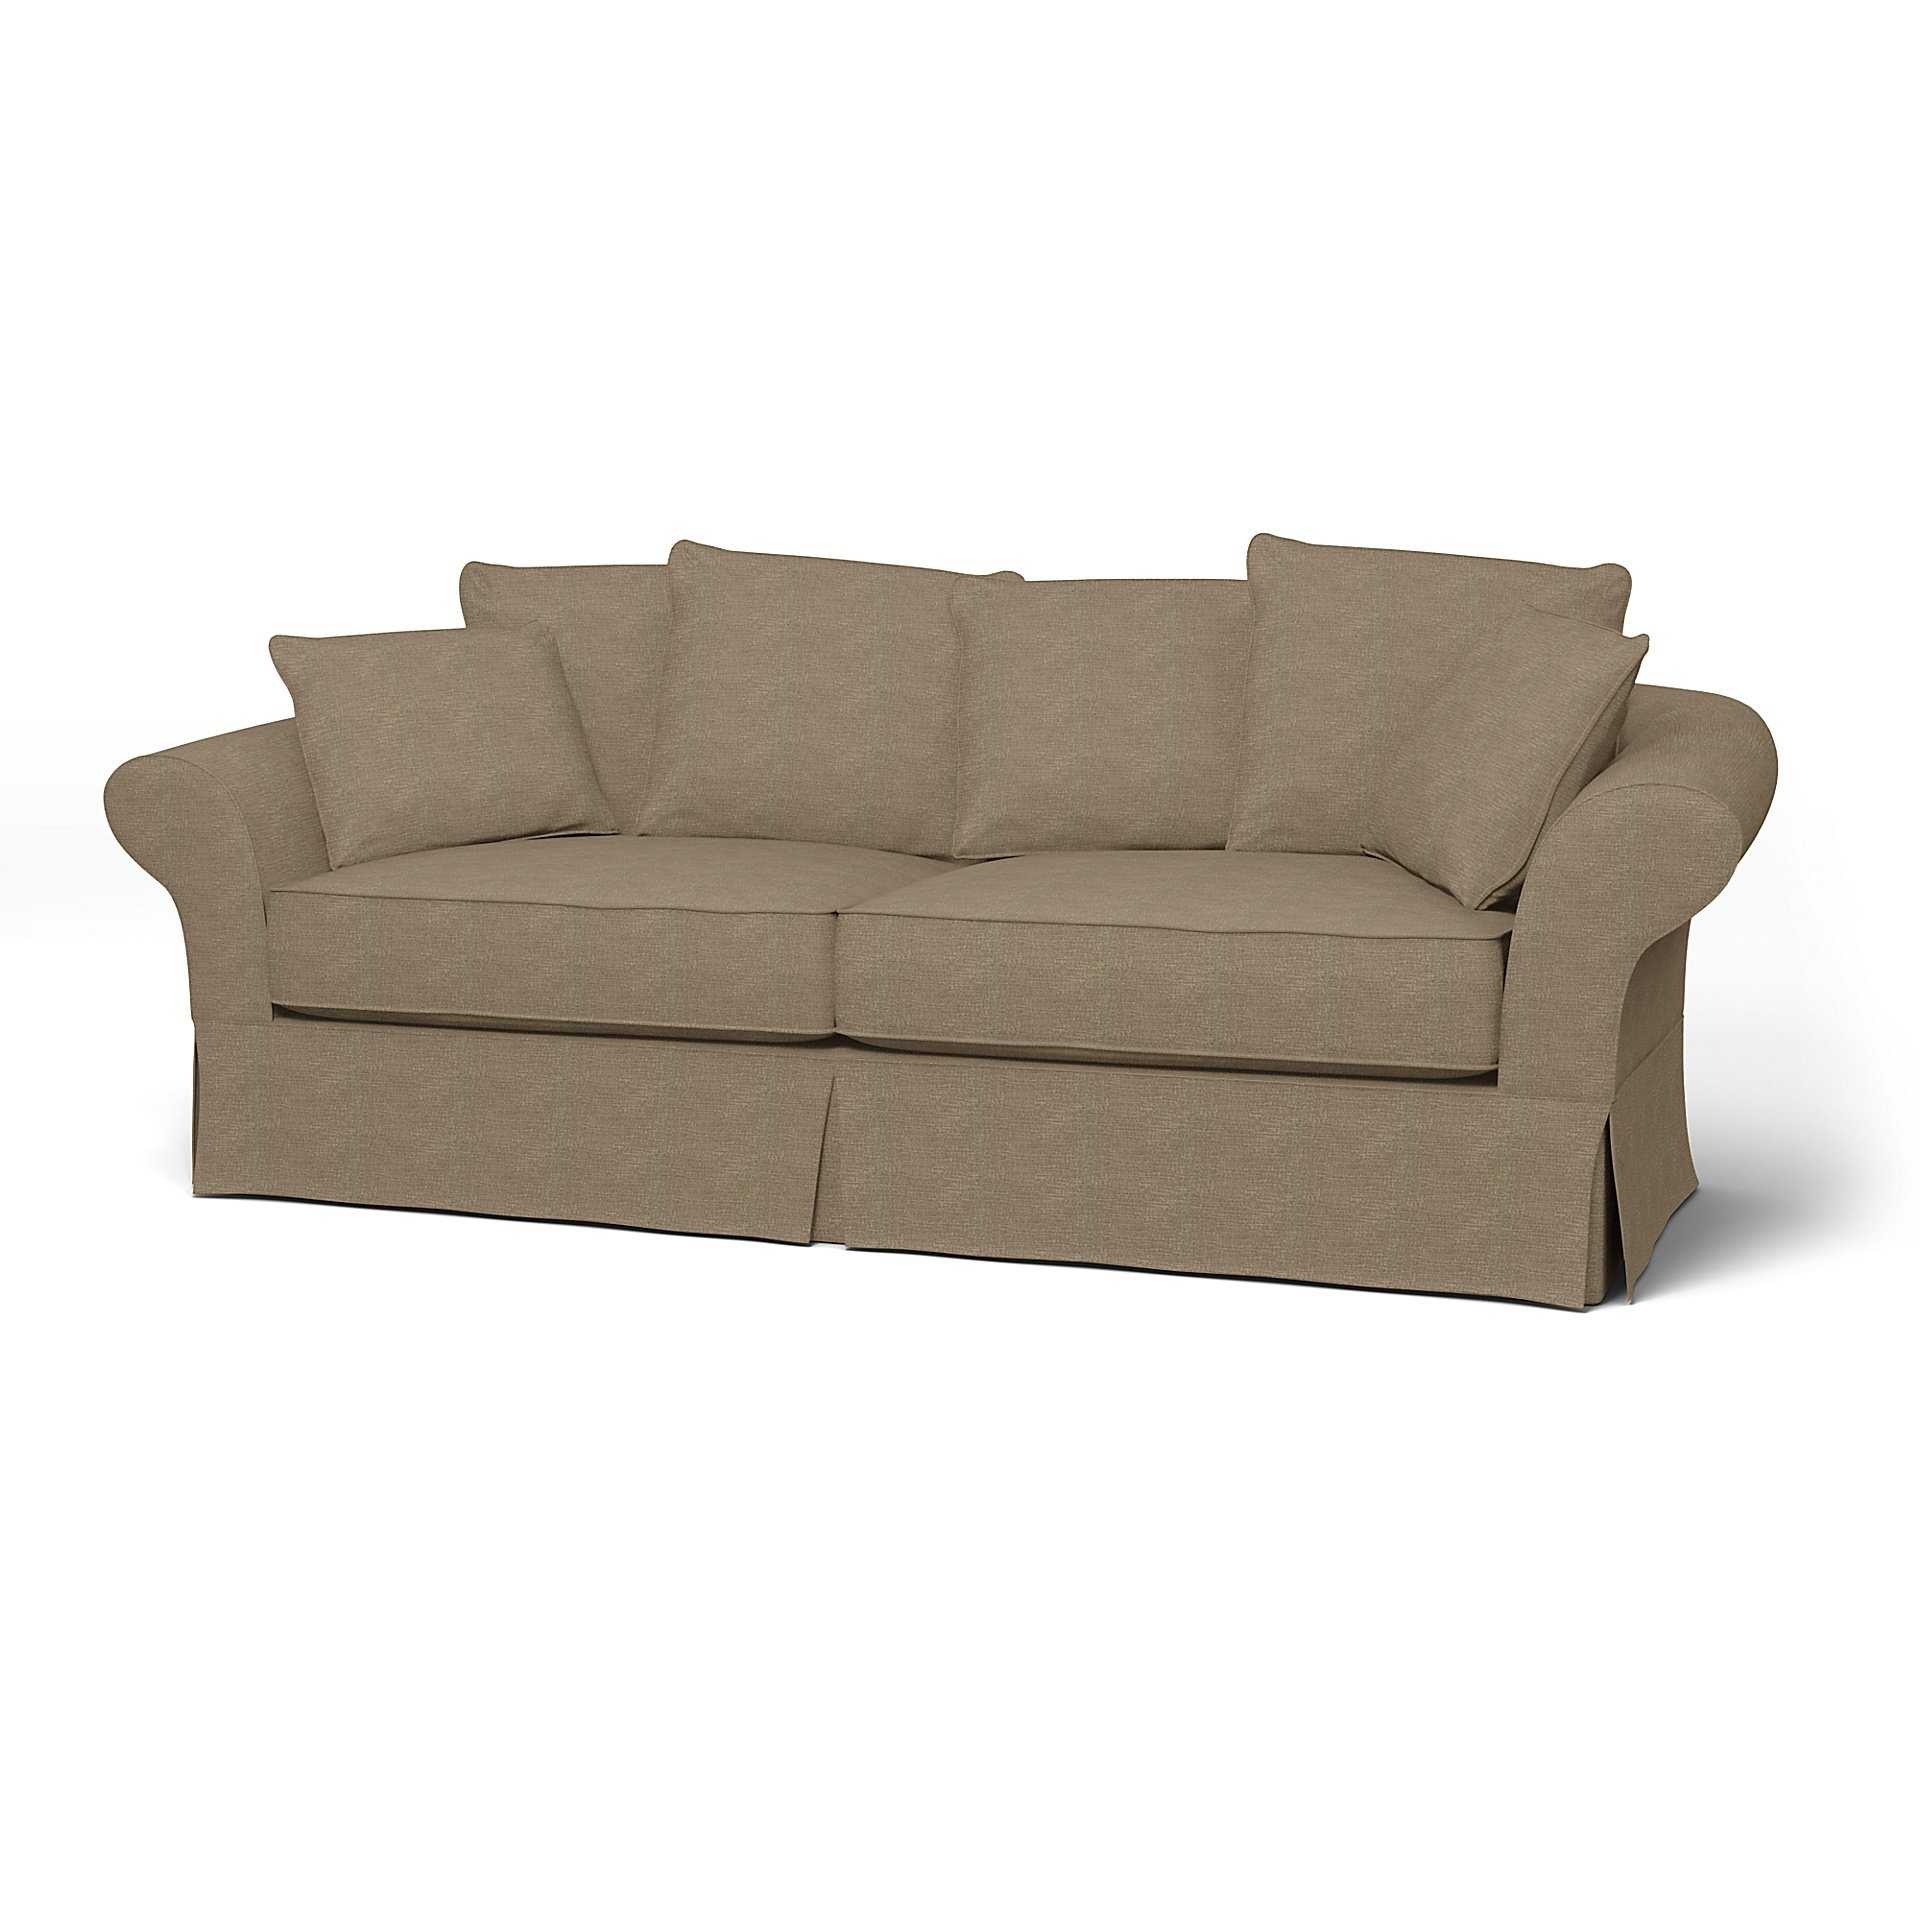 IKEA - Backamo 3 Seater Sofa Cover, Camel, Boucle & Texture - Bemz